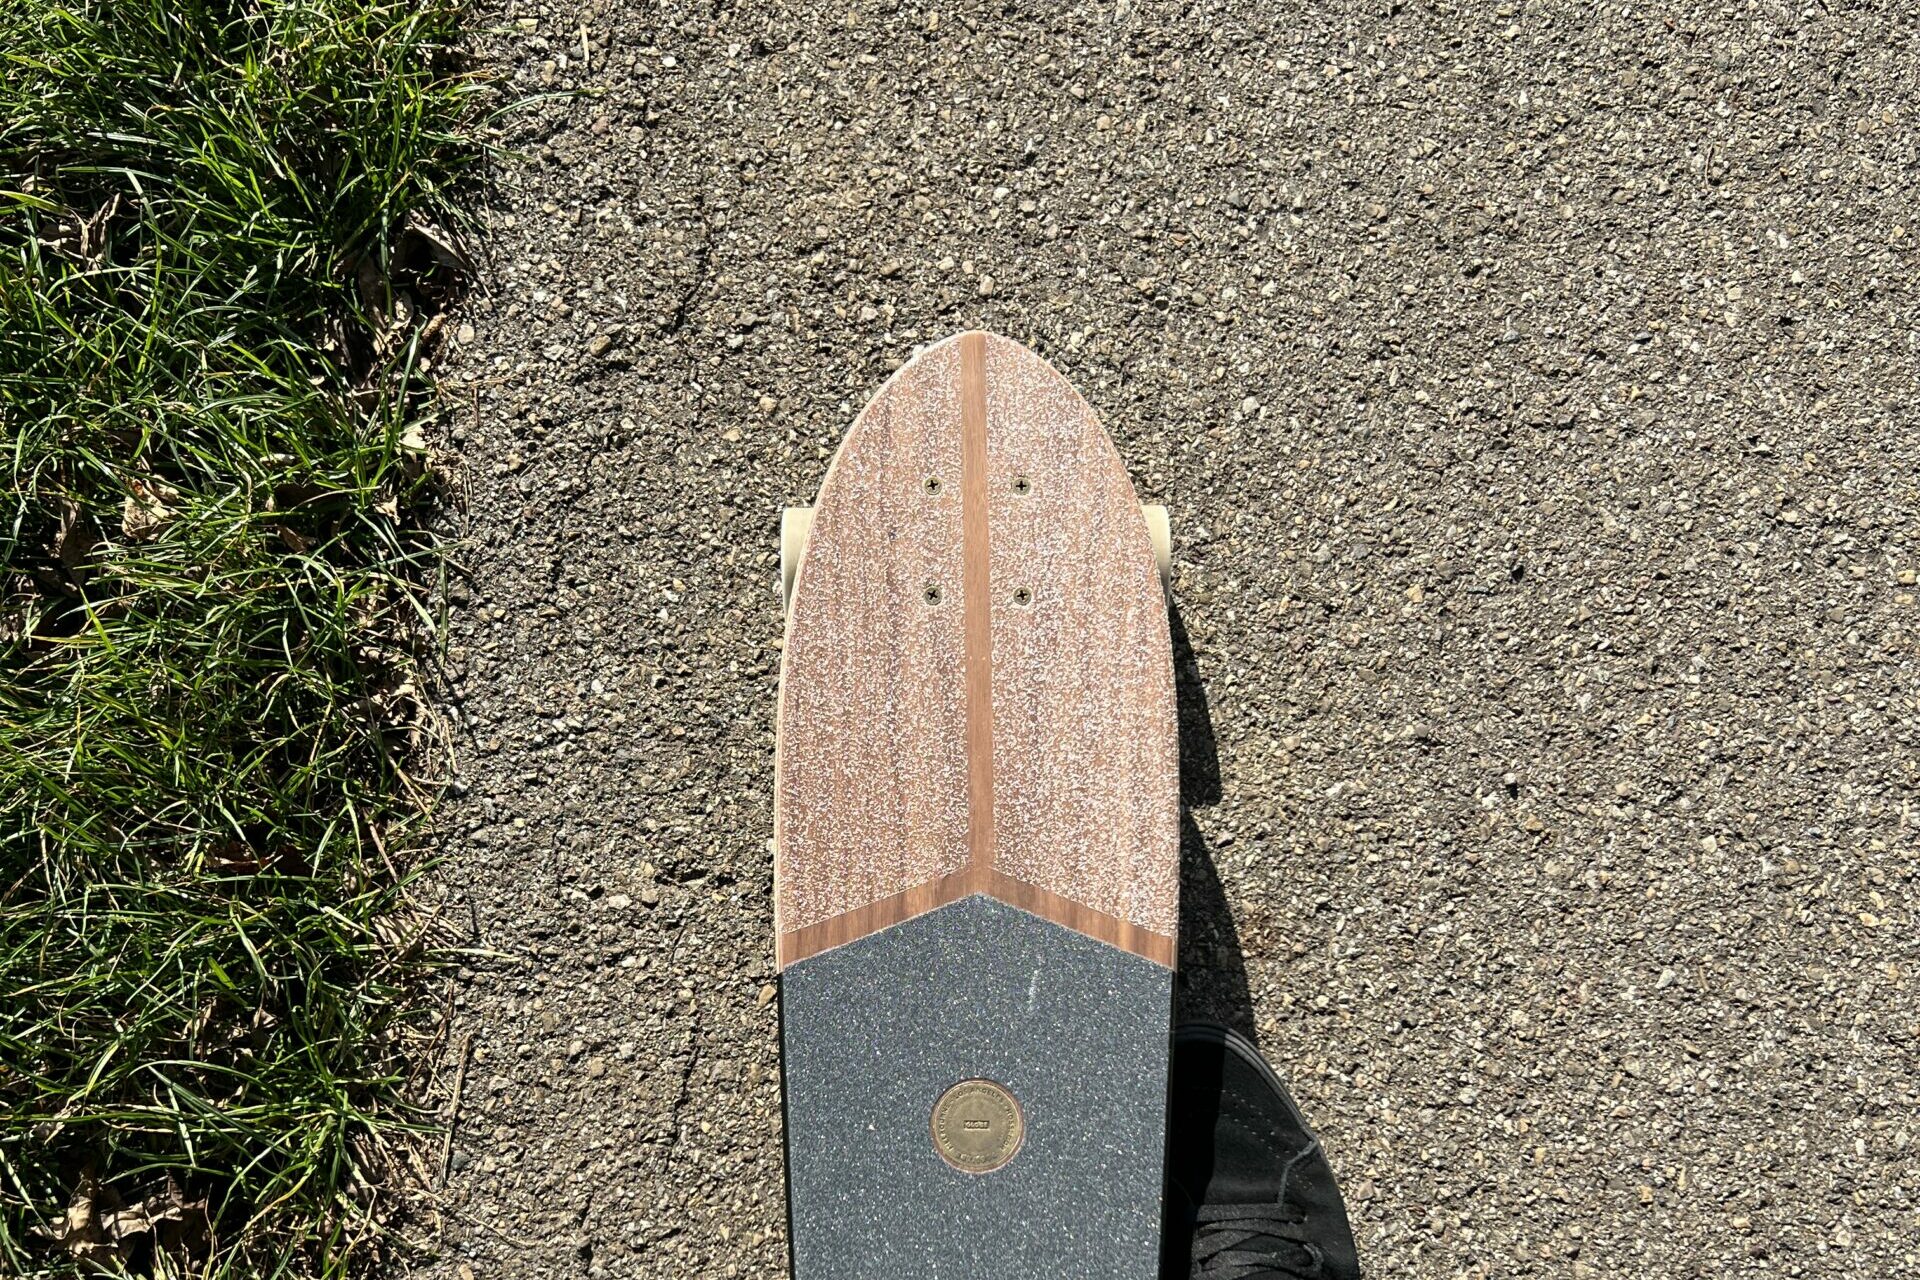 Ein Dingy Board welches mit einem rechten Fuß in Vans sk8 high gehalten wird.